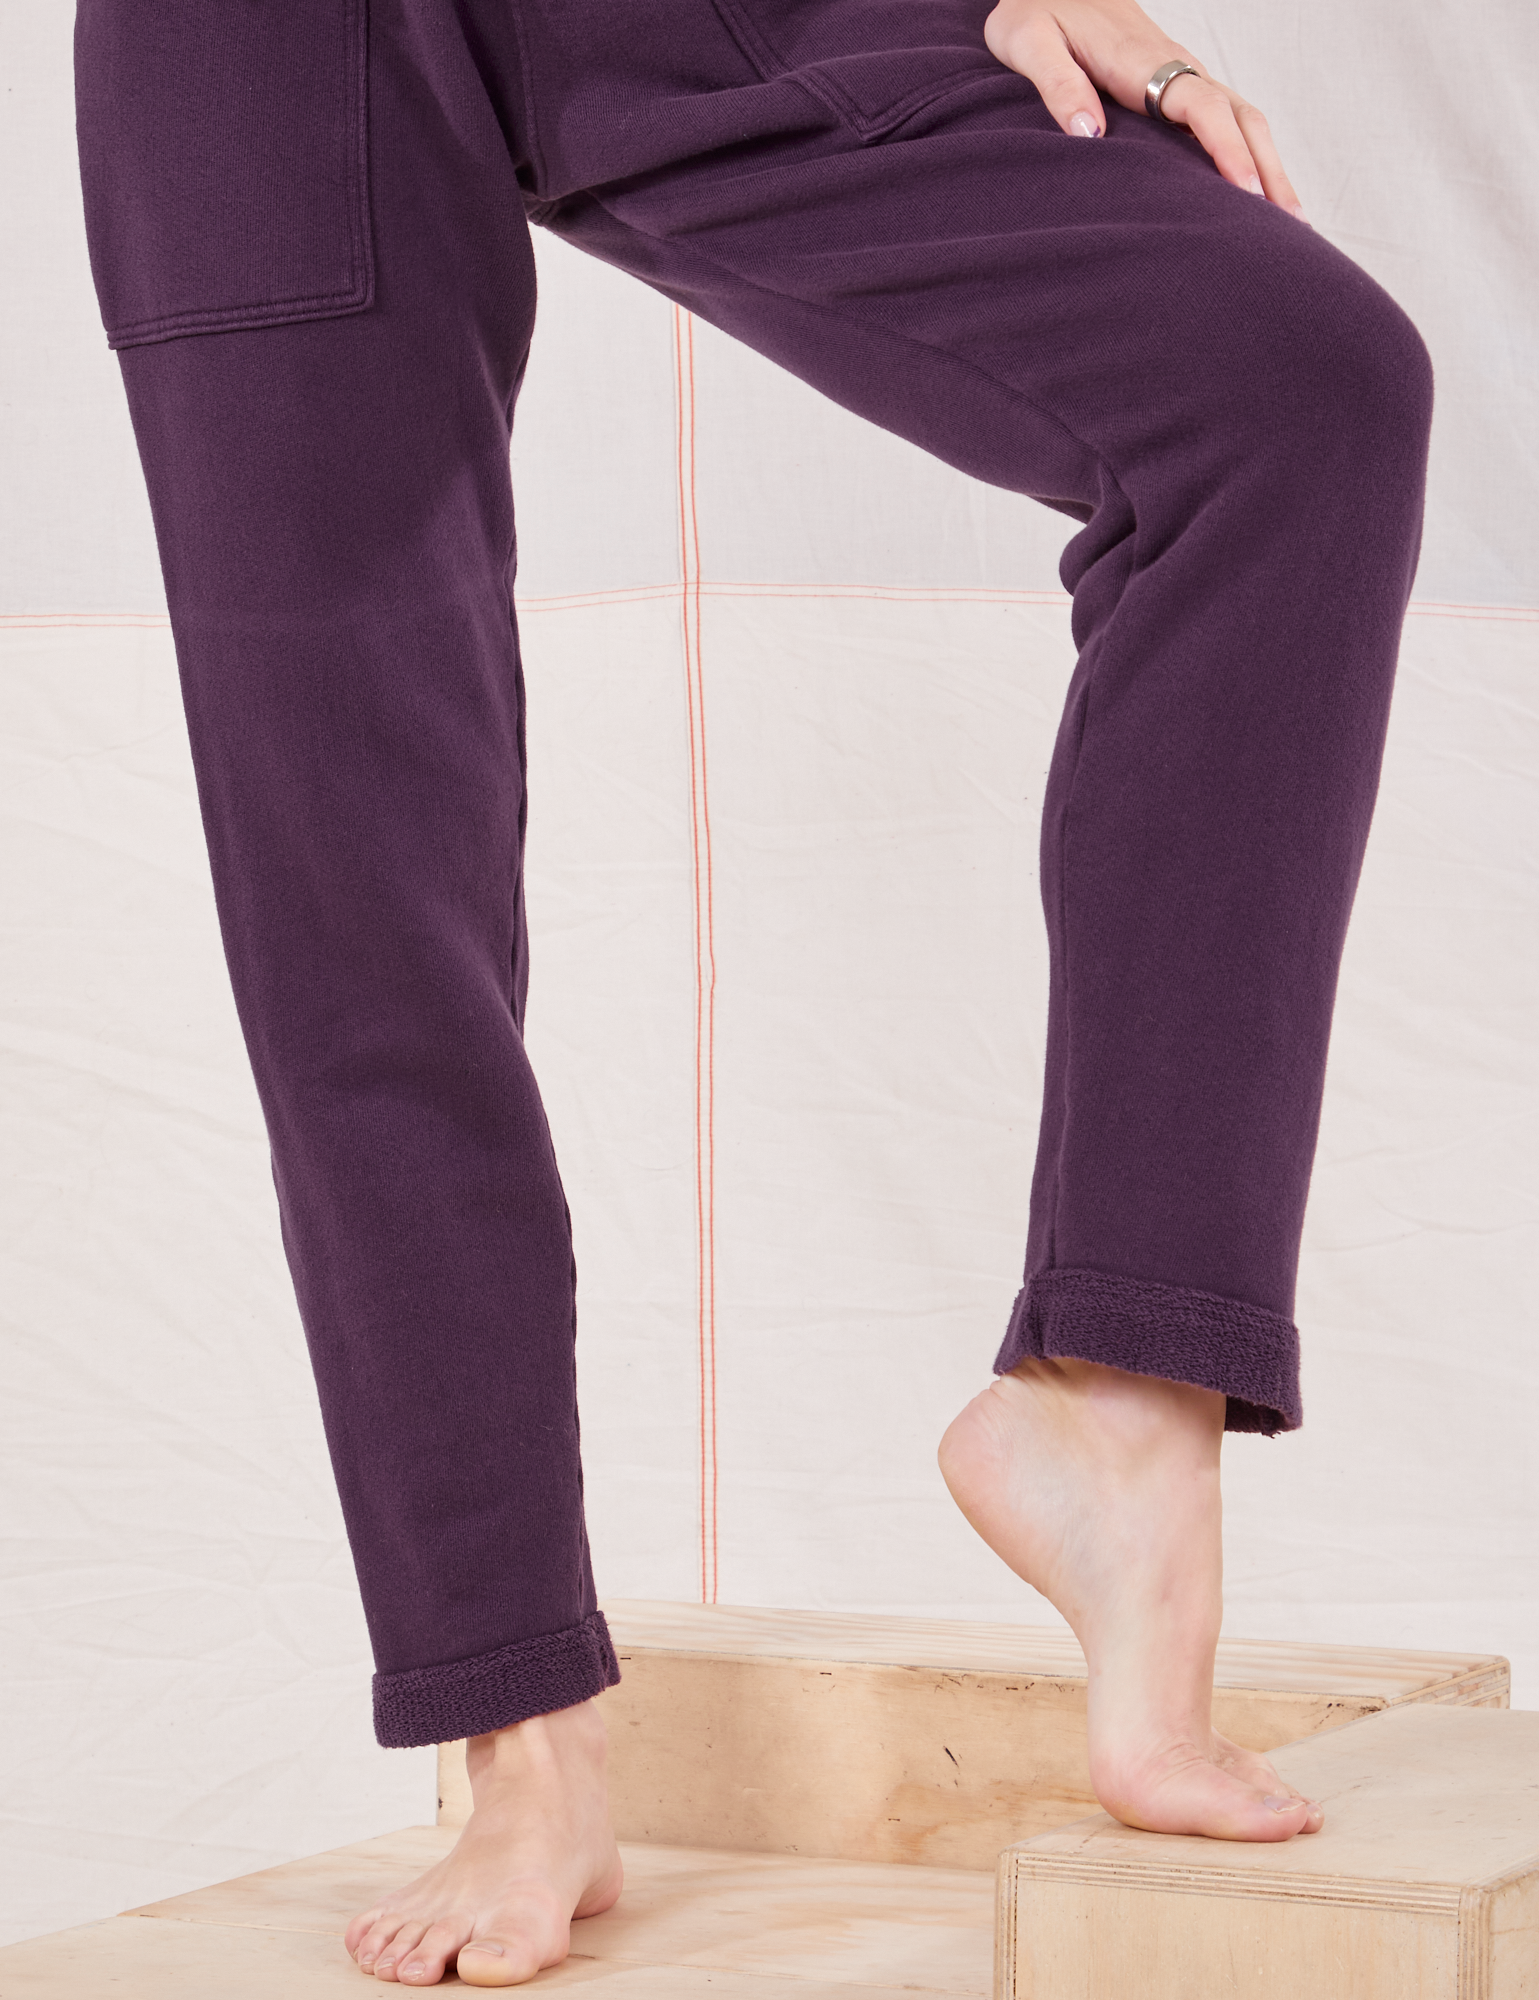 Rolled Cuff Sweat Pants in Nebula Purple pant leg close up on Alex